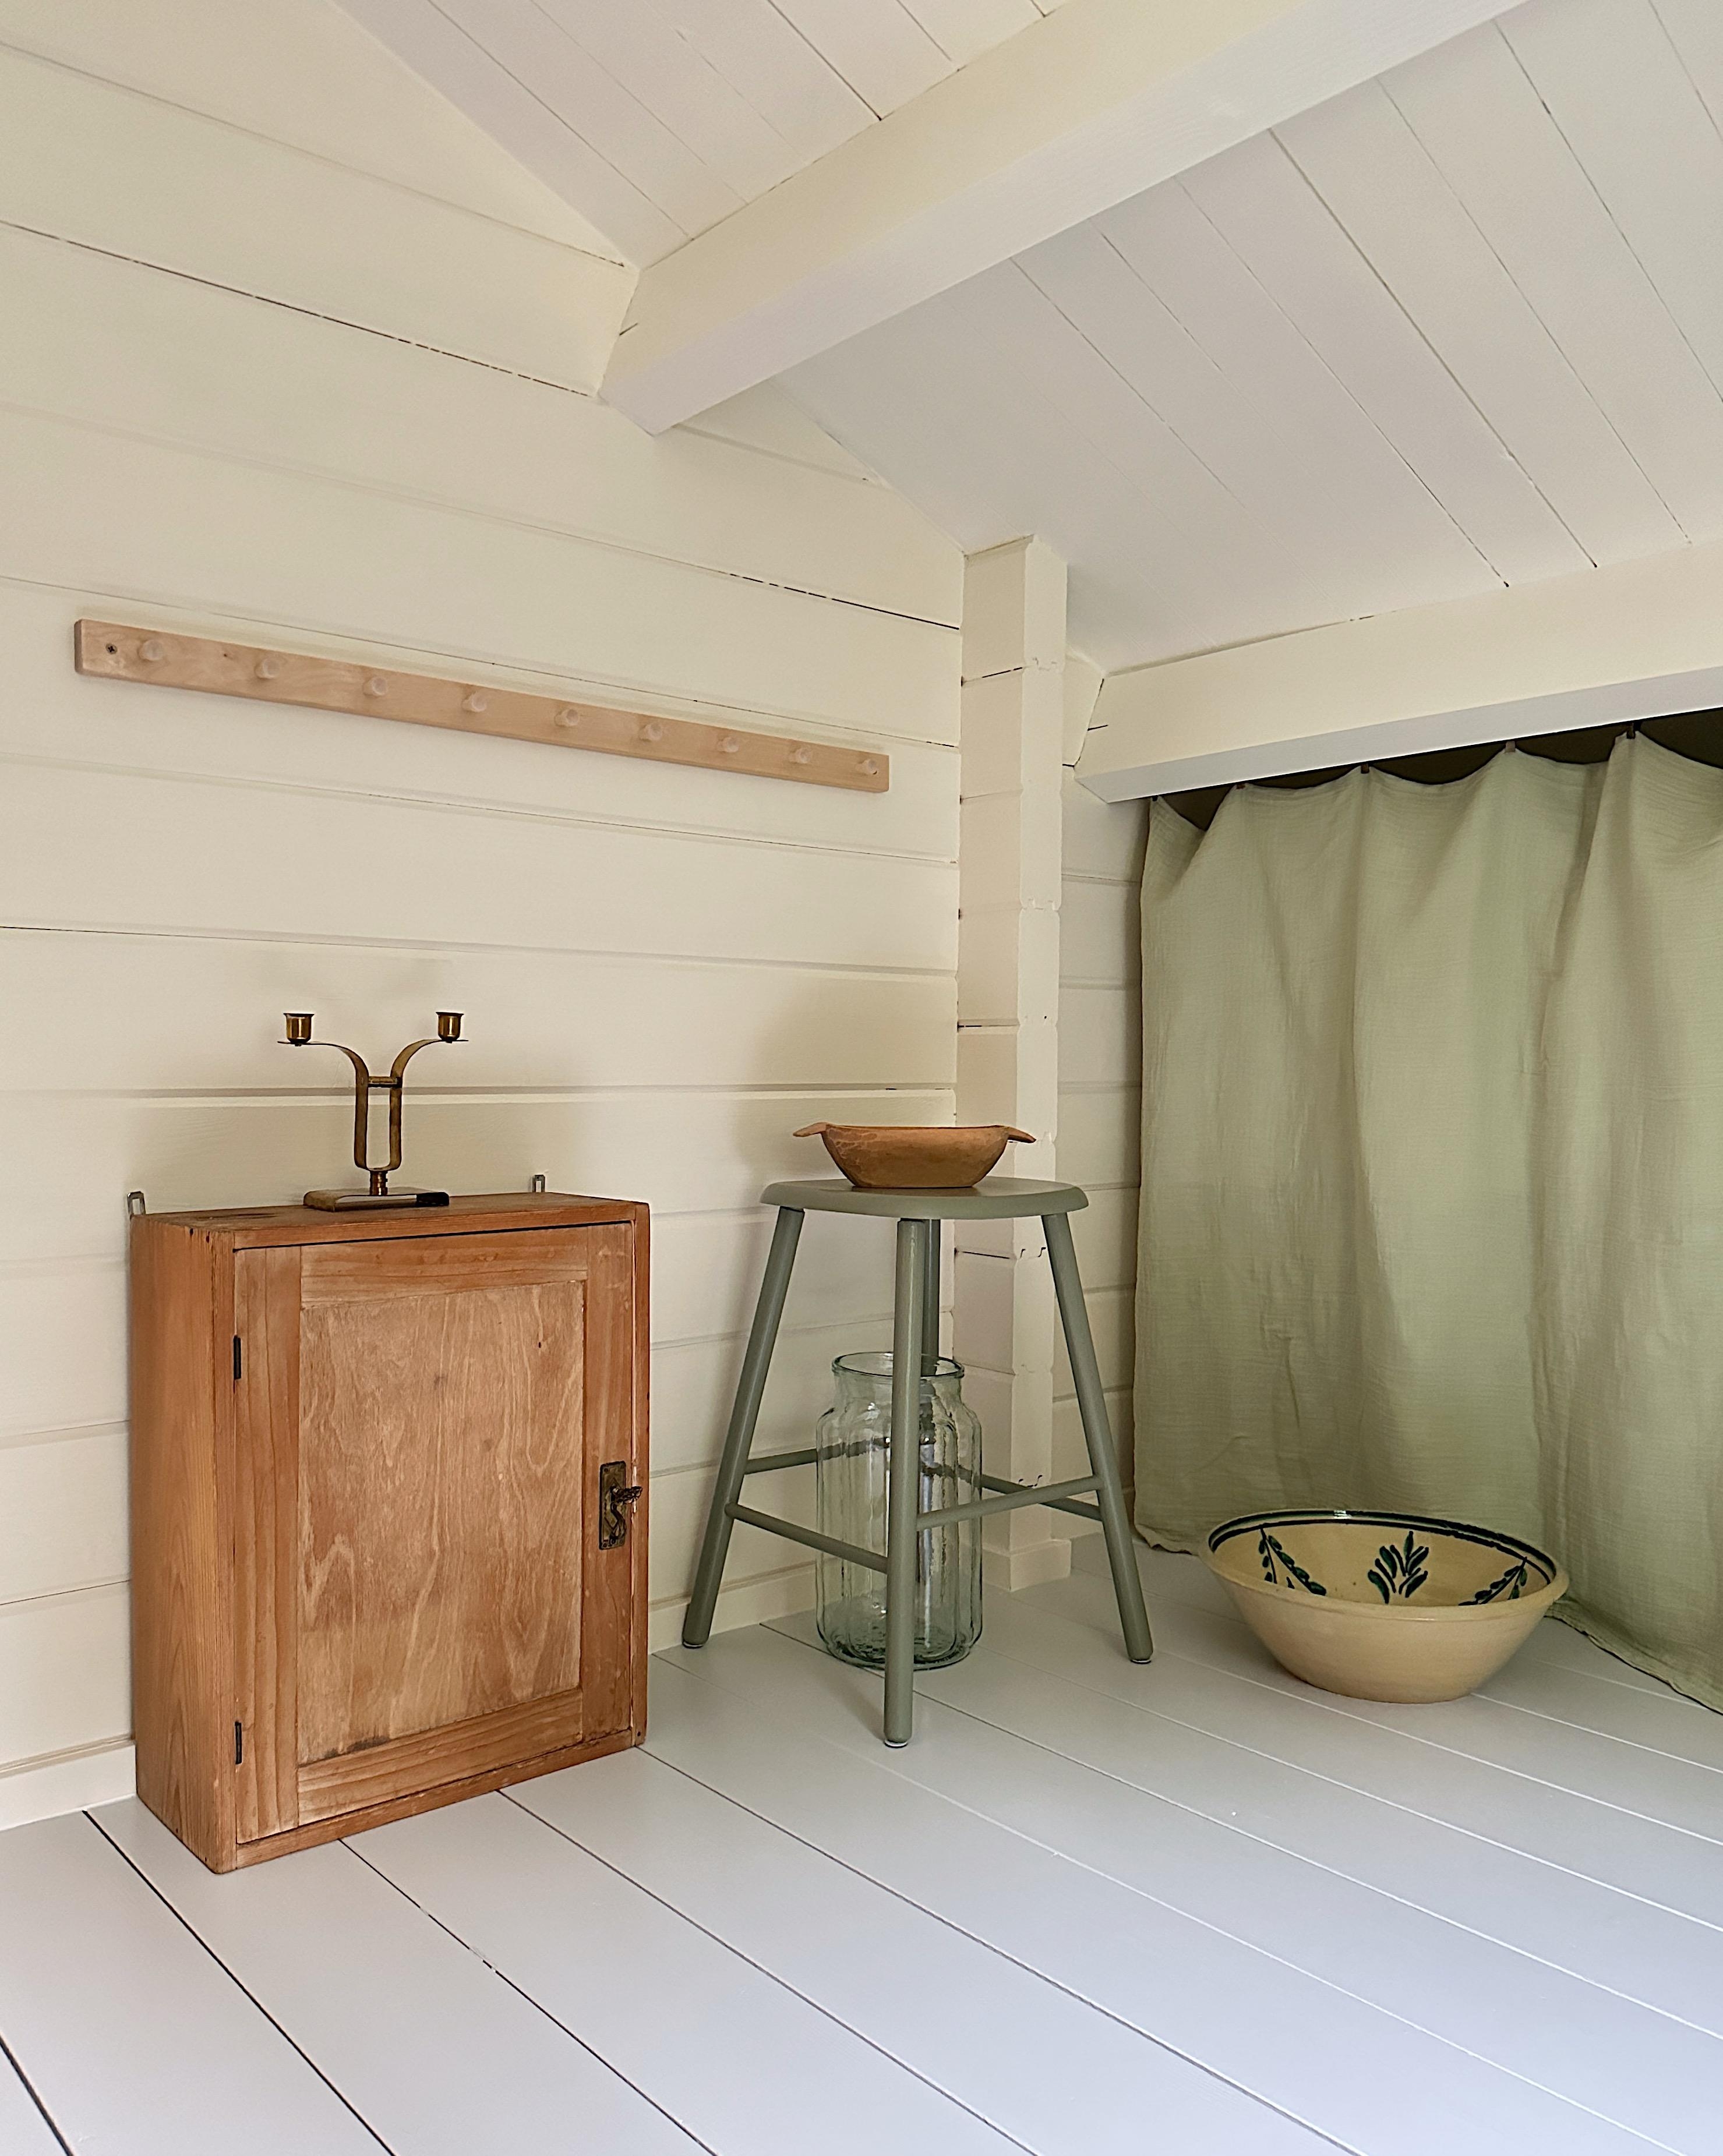 Der erste Raum im Sommerhäuschen ist fertig und kann nun endlich eingerichtet werden.
#vintage #cottage #sommerhaus